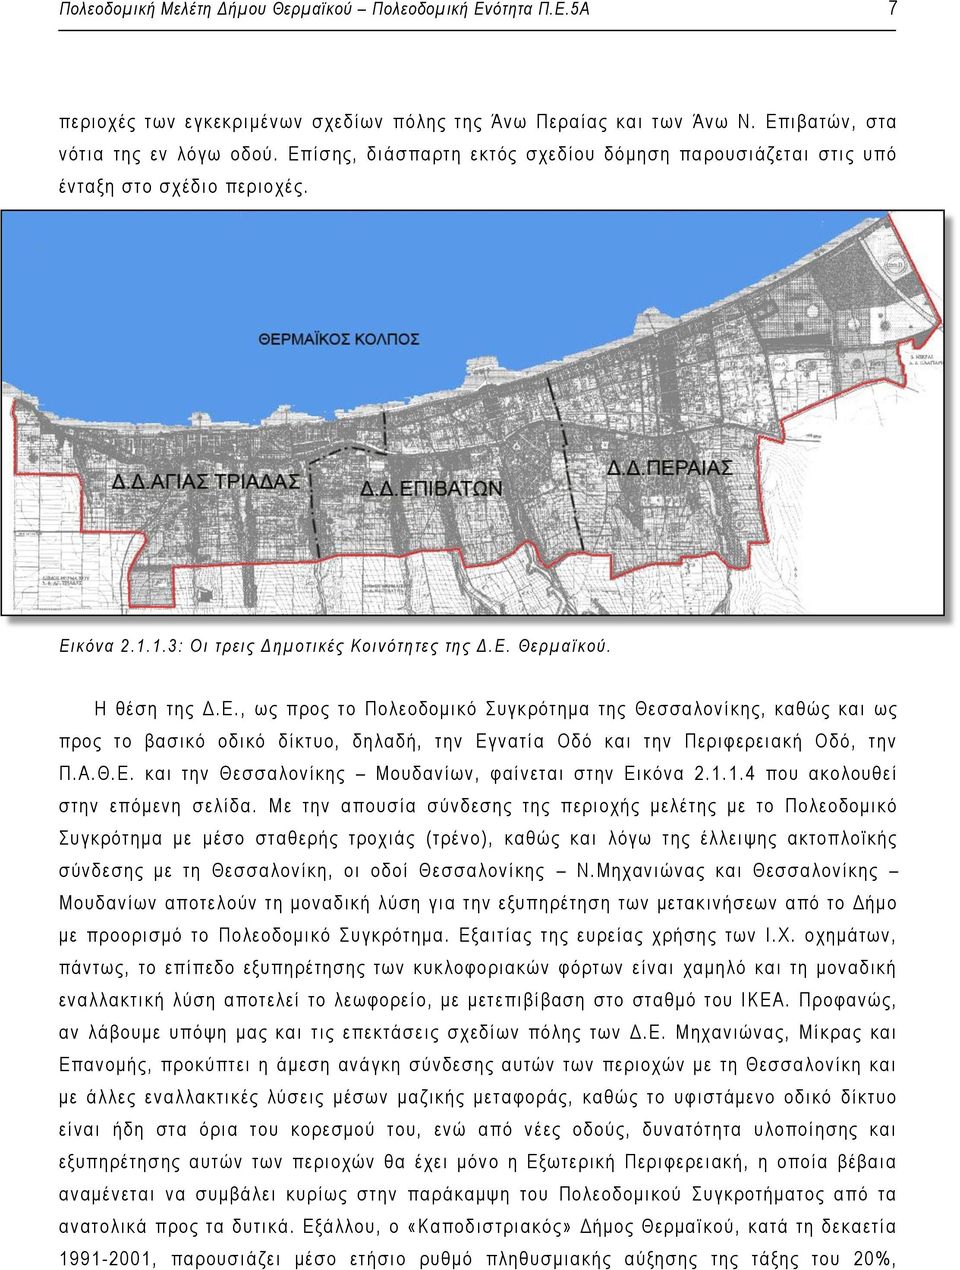 Η θέση της Δ.Ε., ως προς το Πολεοδομικό Συγκ ρότημα της Θεσσαλονίκης, καθώς και ως προς το βασικό οδικό δίκτυο, δηλαδή, τ ην Εγ νατία Οδό και την Περιφερειακή Οδό, την Π.Α.Θ. Ε. και την Θε σσα λονίκης Μουδανίων, φαίνεται στην Εικόνα 2.